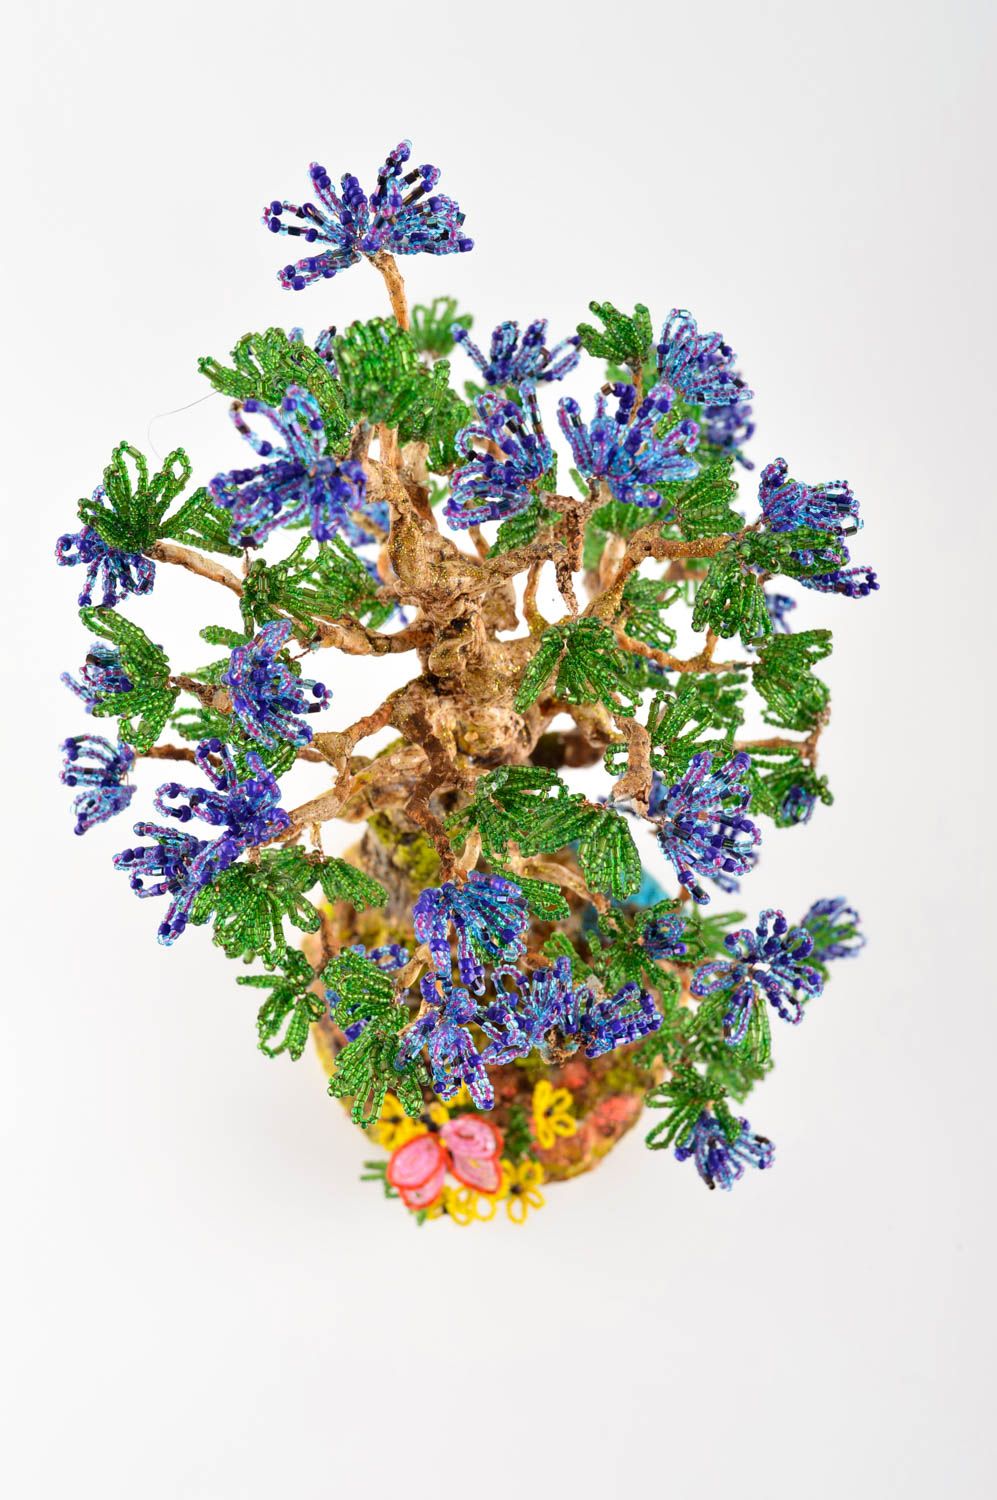 Handmade Deko künstlicher Baum Dekoration Wohnzimmer Tischdekoration Idee schön foto 3